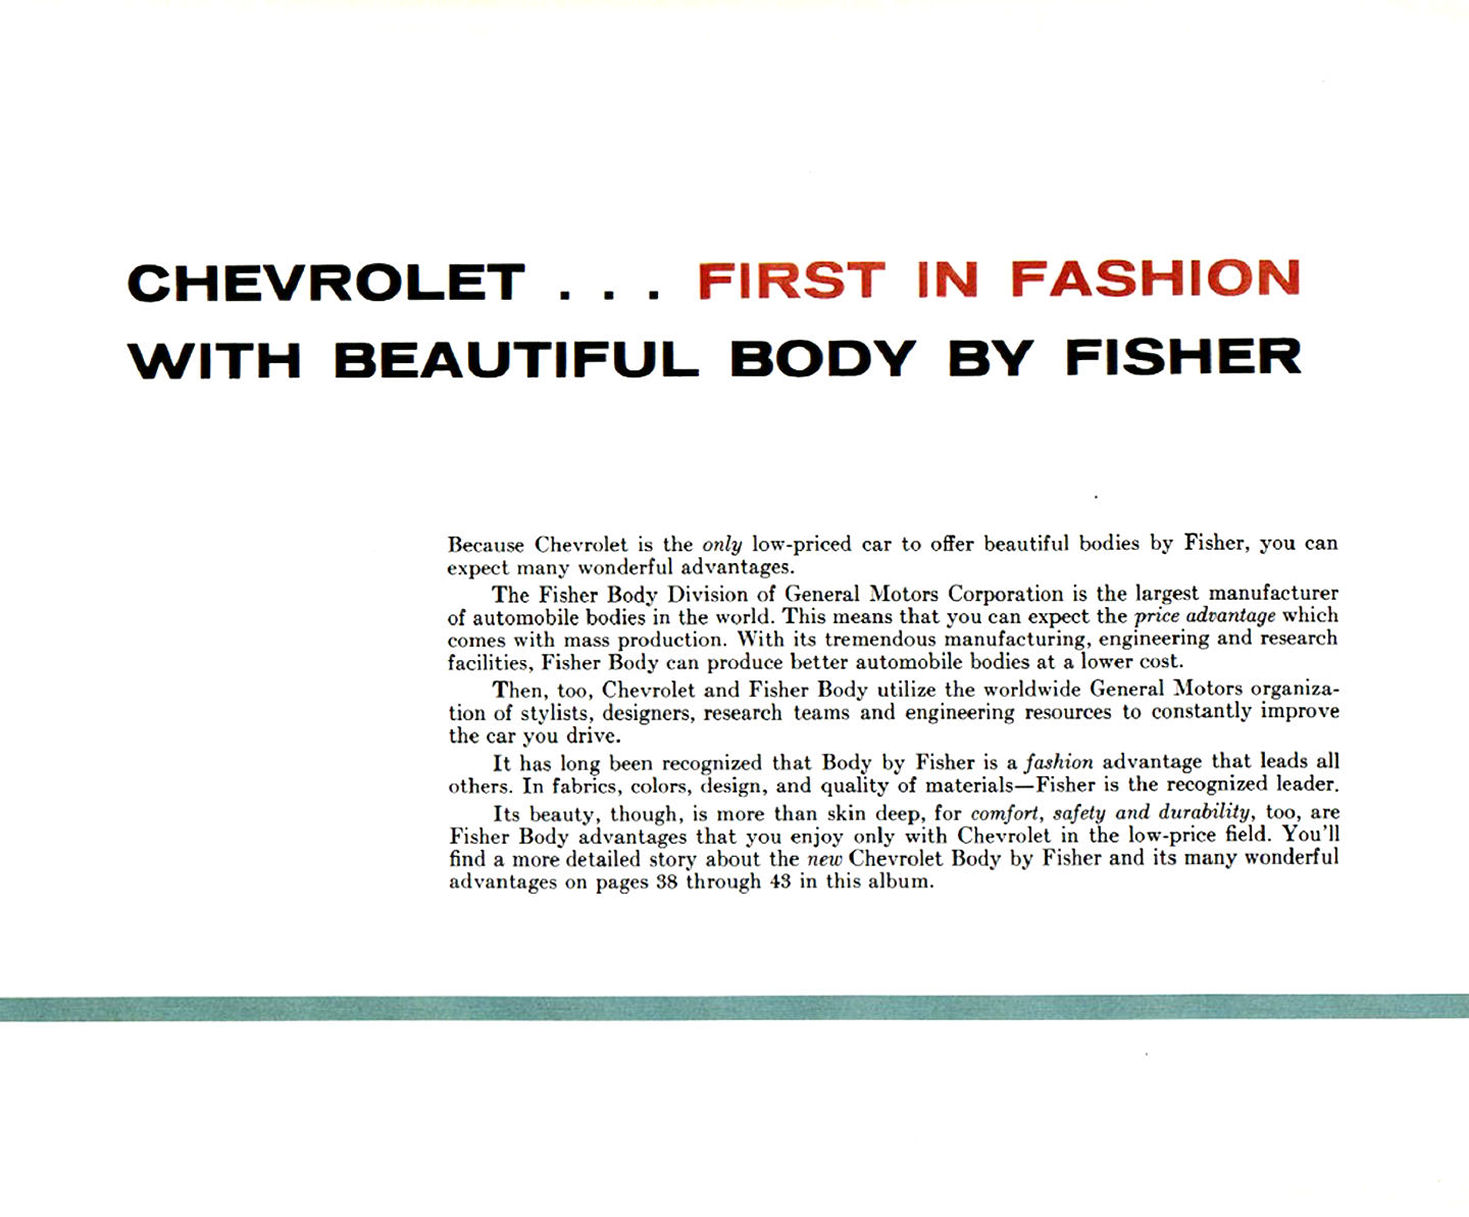 1955_Chevrolet_Dealer_Album-036